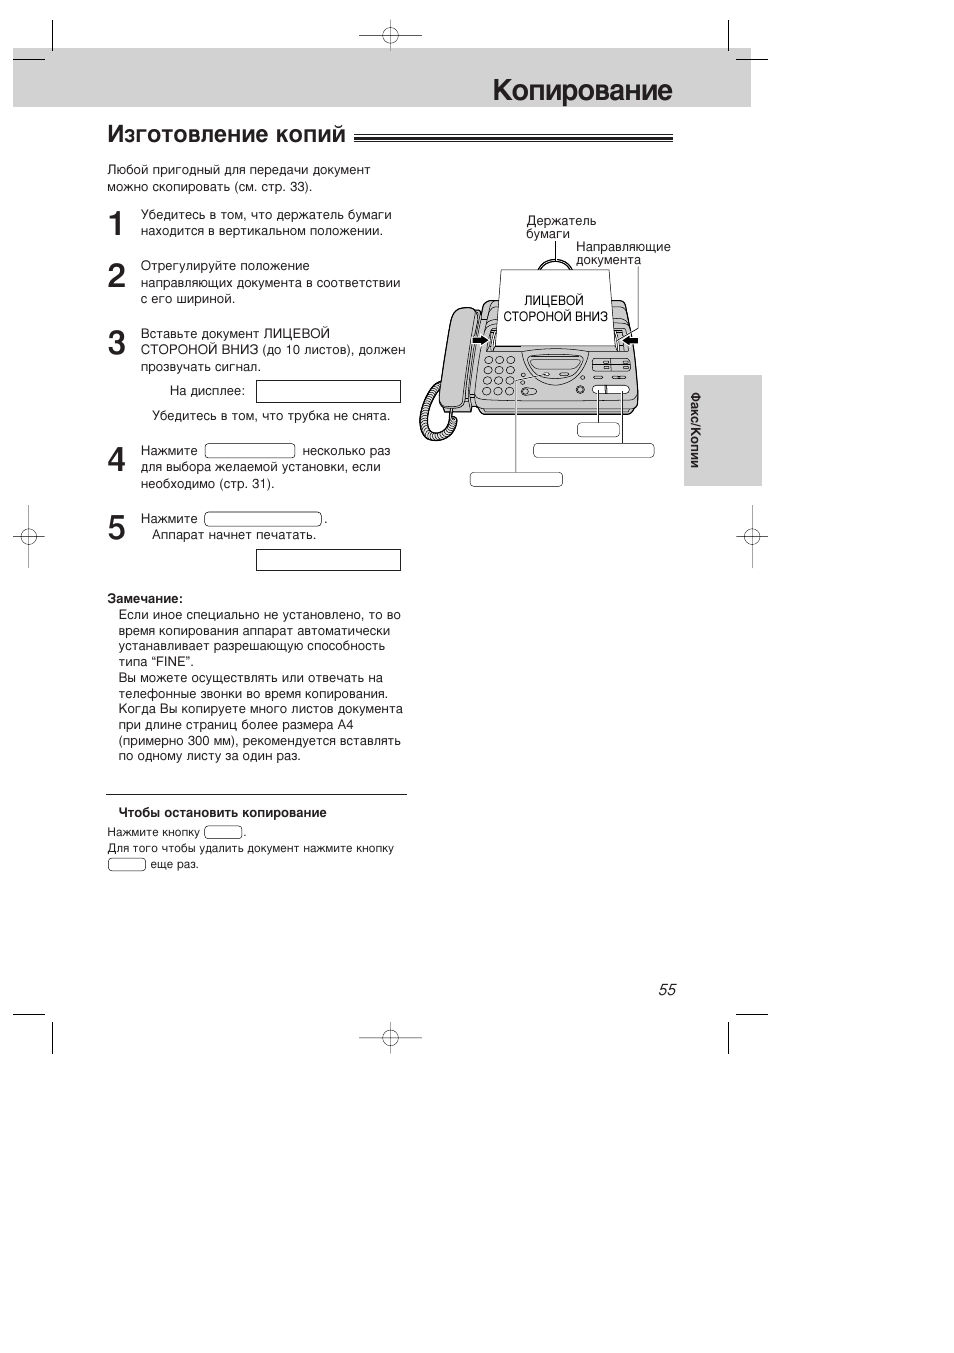 Изготовление копий, Копирование | Инструкция по эксплуатации Panasonic KX-FT21RS | Страница 55 / 72